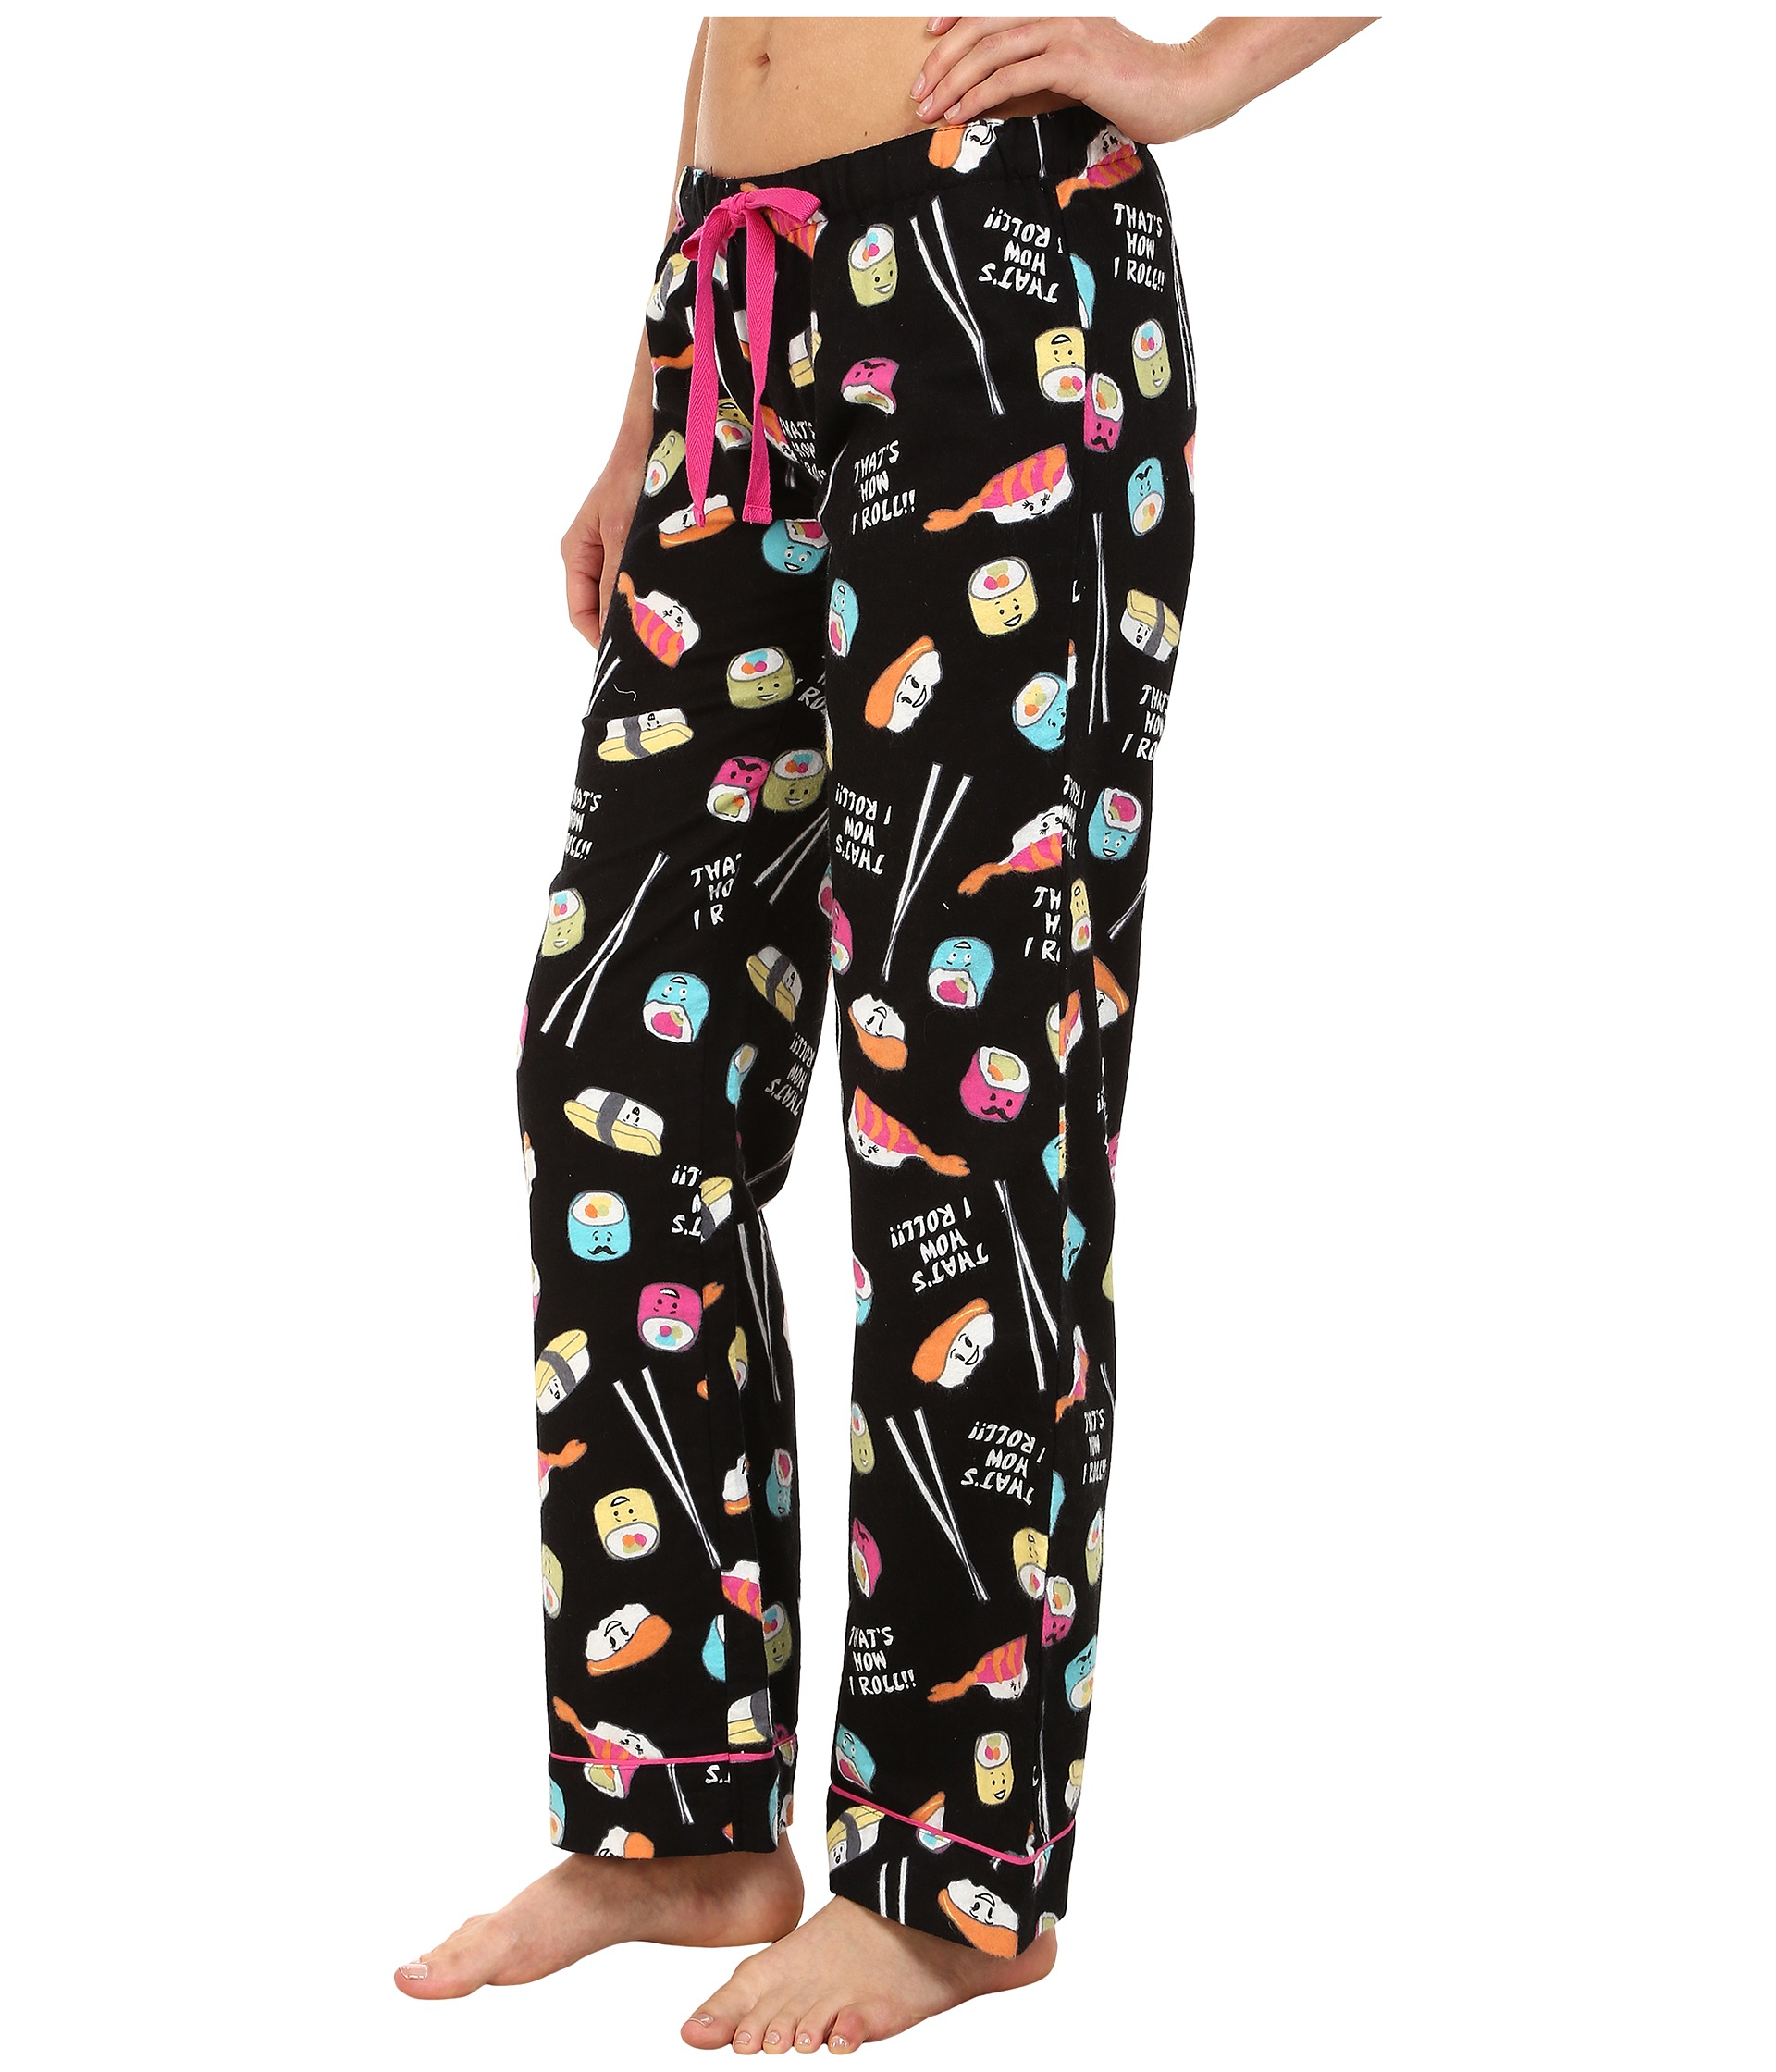 Lyst - Pj salvage Sushi Flannel Sleep Pants in Black